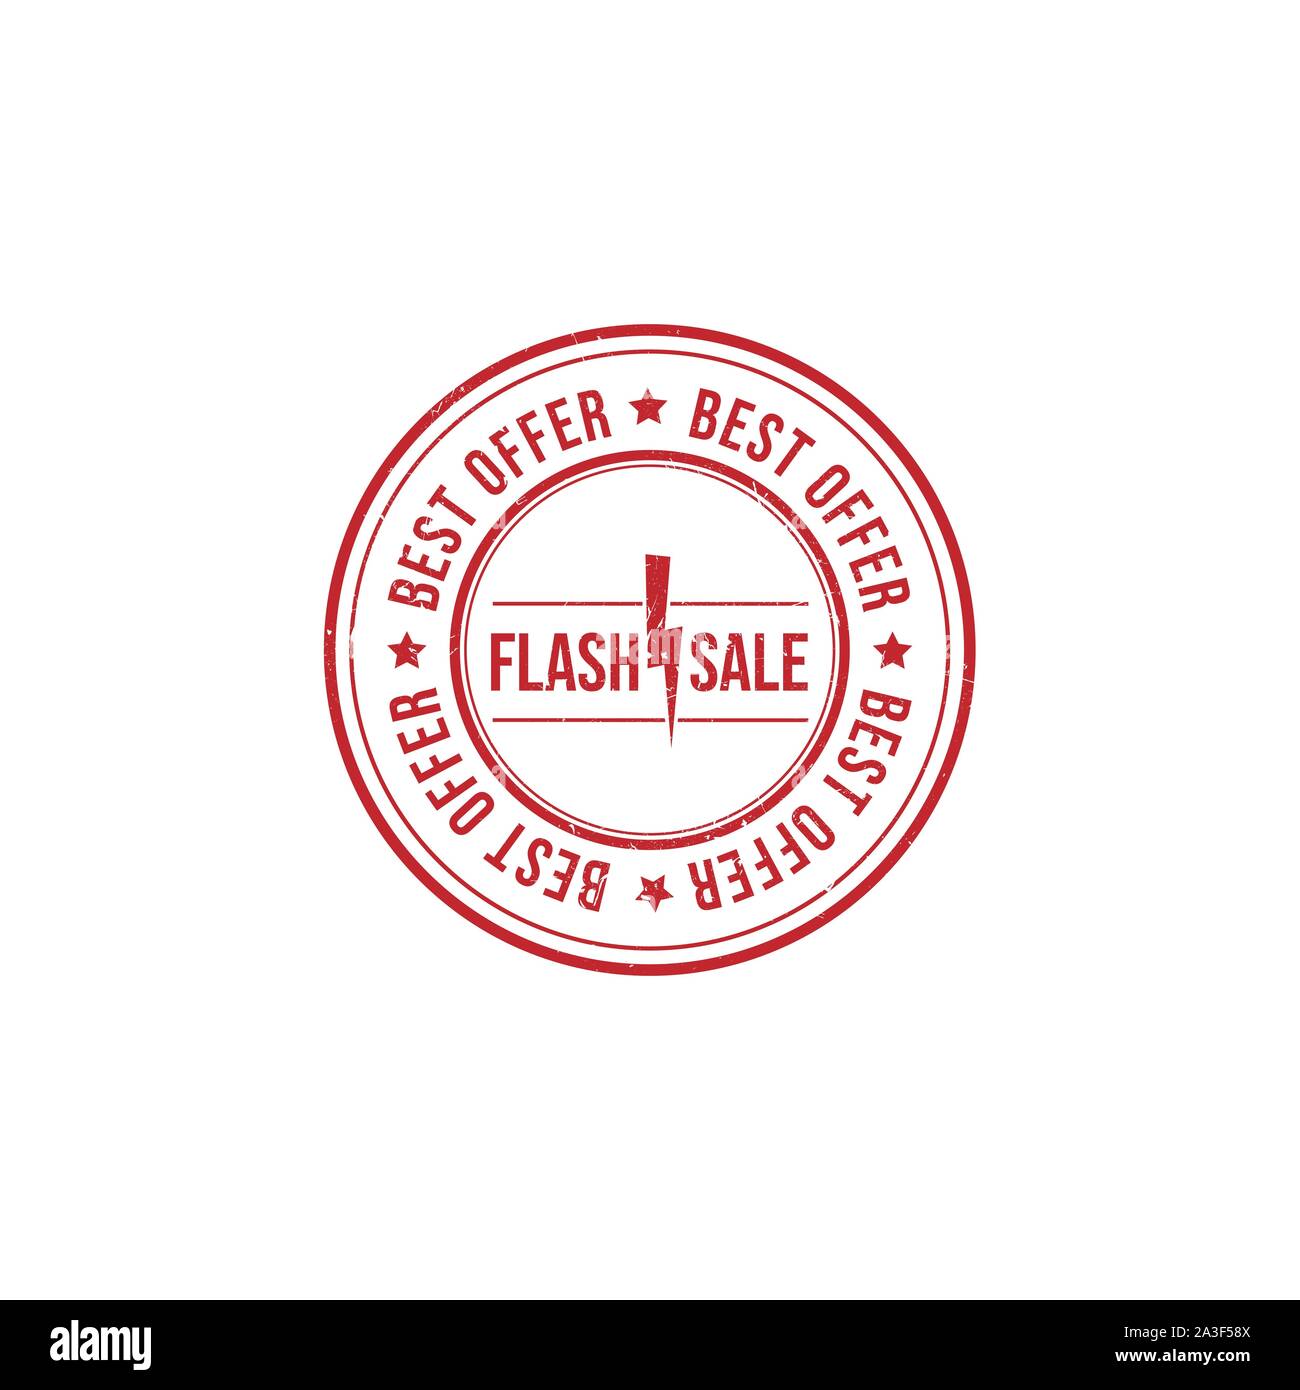 Flash Sale grunge Gummi Stempel. Vector Illustration auf weißem Hintergrund. Geschäftskonzept verkauf Rabatt Stempel Piktogramm Stock Vektor